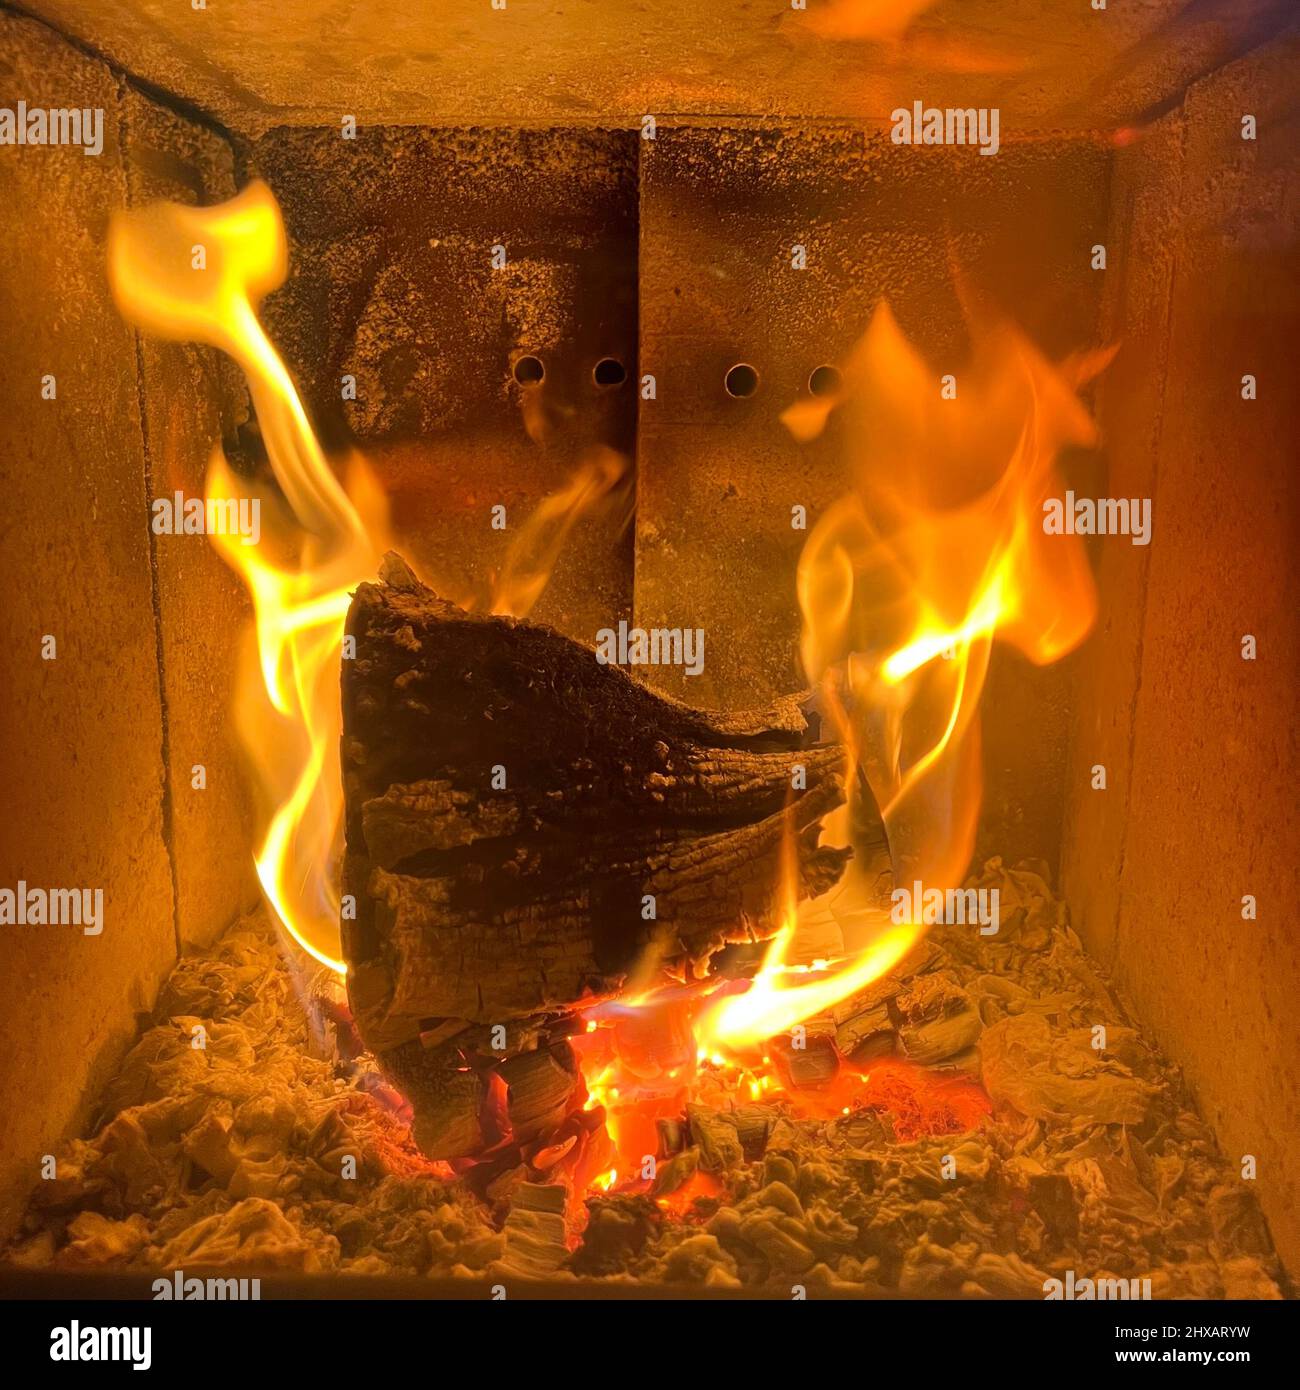 Feu dans la cheminée - feu de bois - chaud, hiver, énergie, bois, poêle - BookCover - Kaminfeuer, Feuer, Kaminofen, poêle Banque D'Images